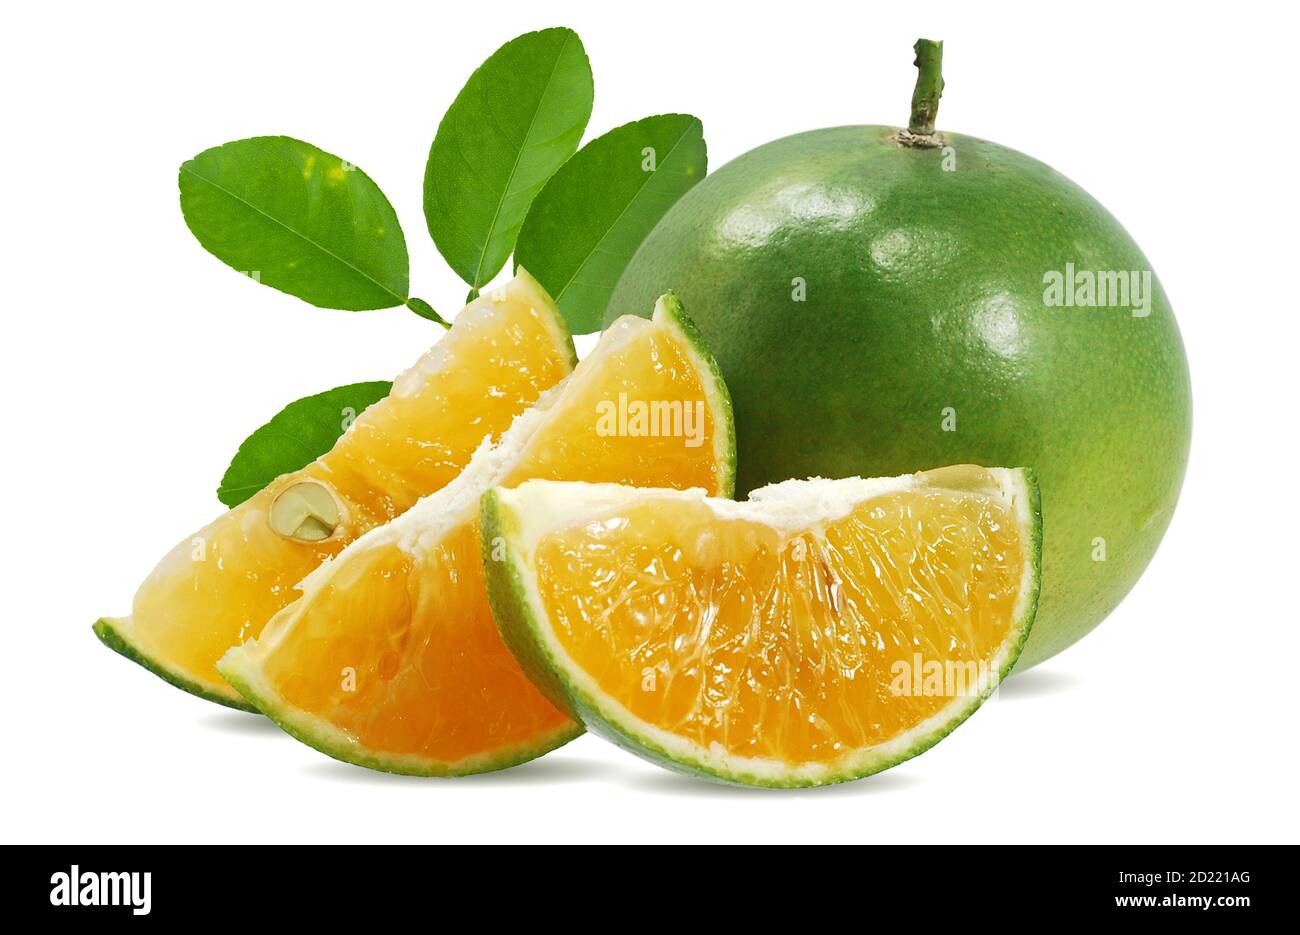 Calamansi or Green orange fruits isolated on white background Stock Photo